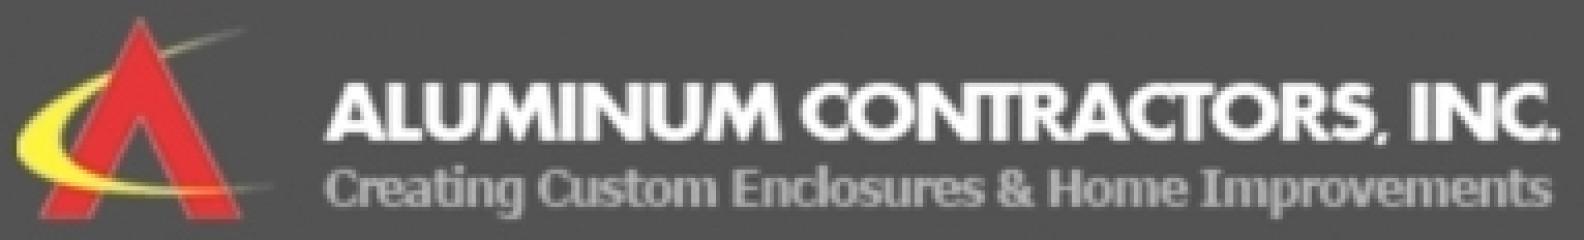 Aluminum Contractors Inc (1142894)